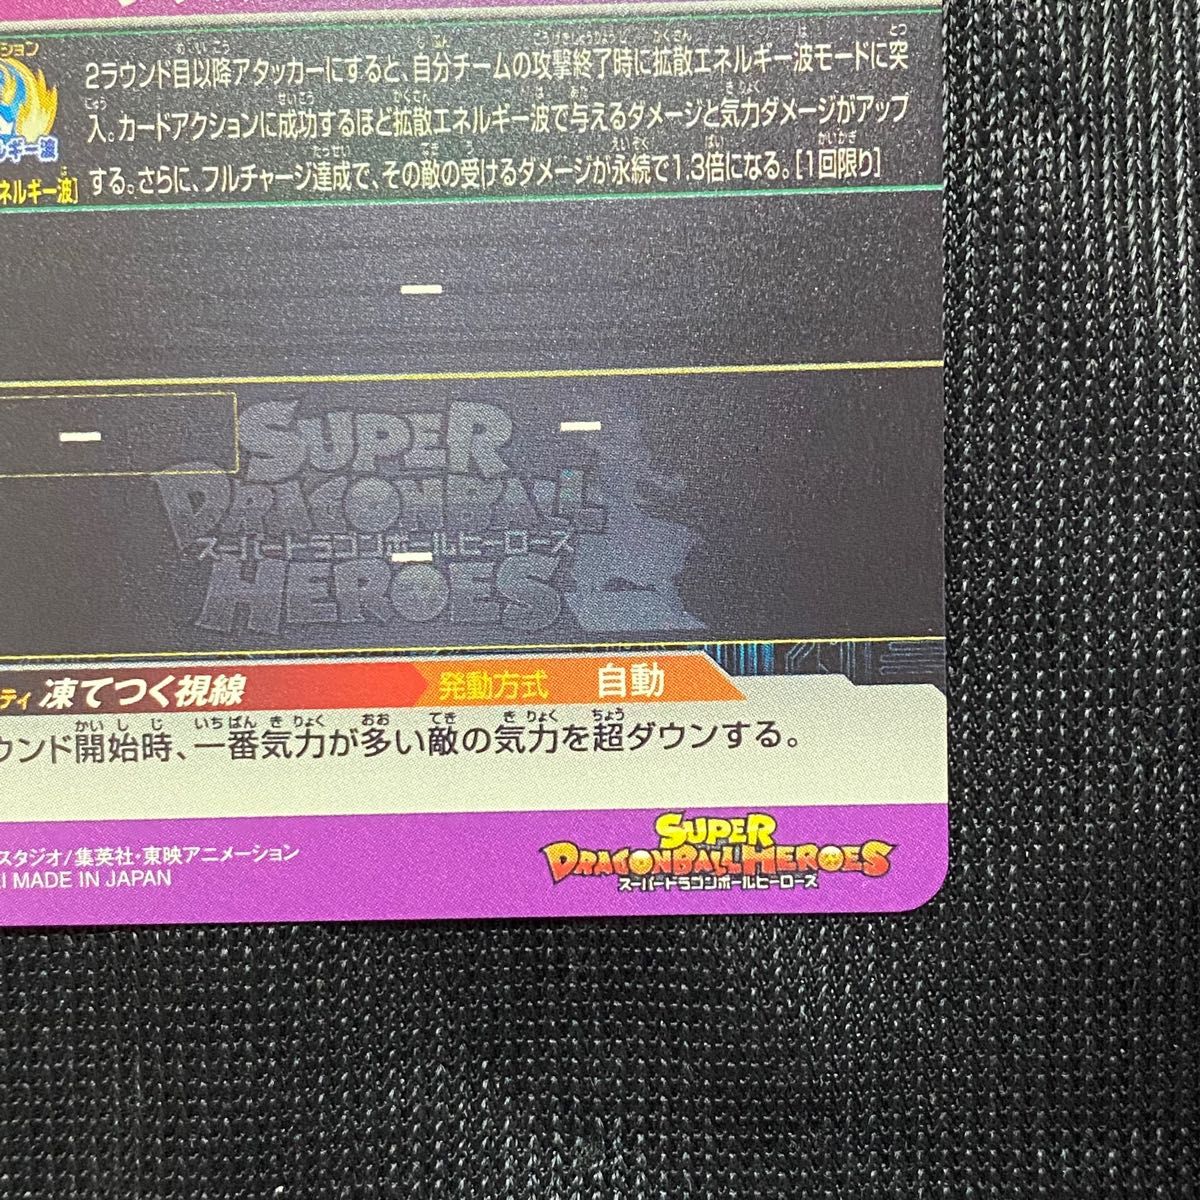 スーパードラゴンボールヒーローズ UGM5-RCP2 フリーザ